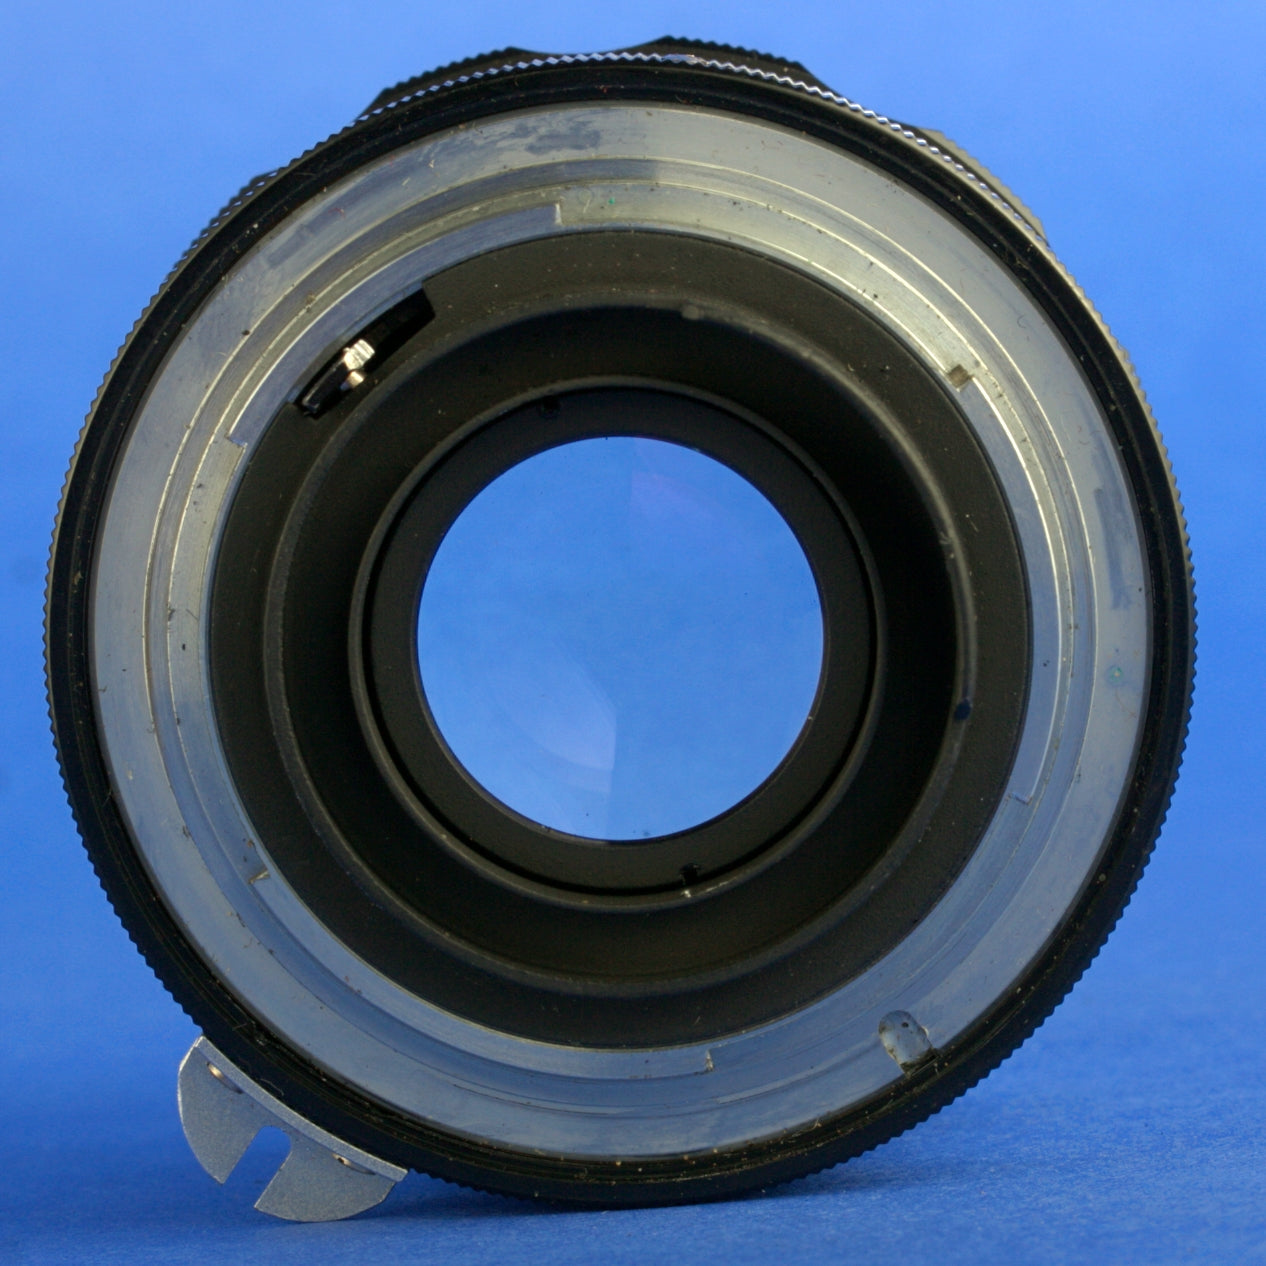 Nikon Nikkor-S 5cm F2 Non-Ai Pat Pend Lens Mint Condition